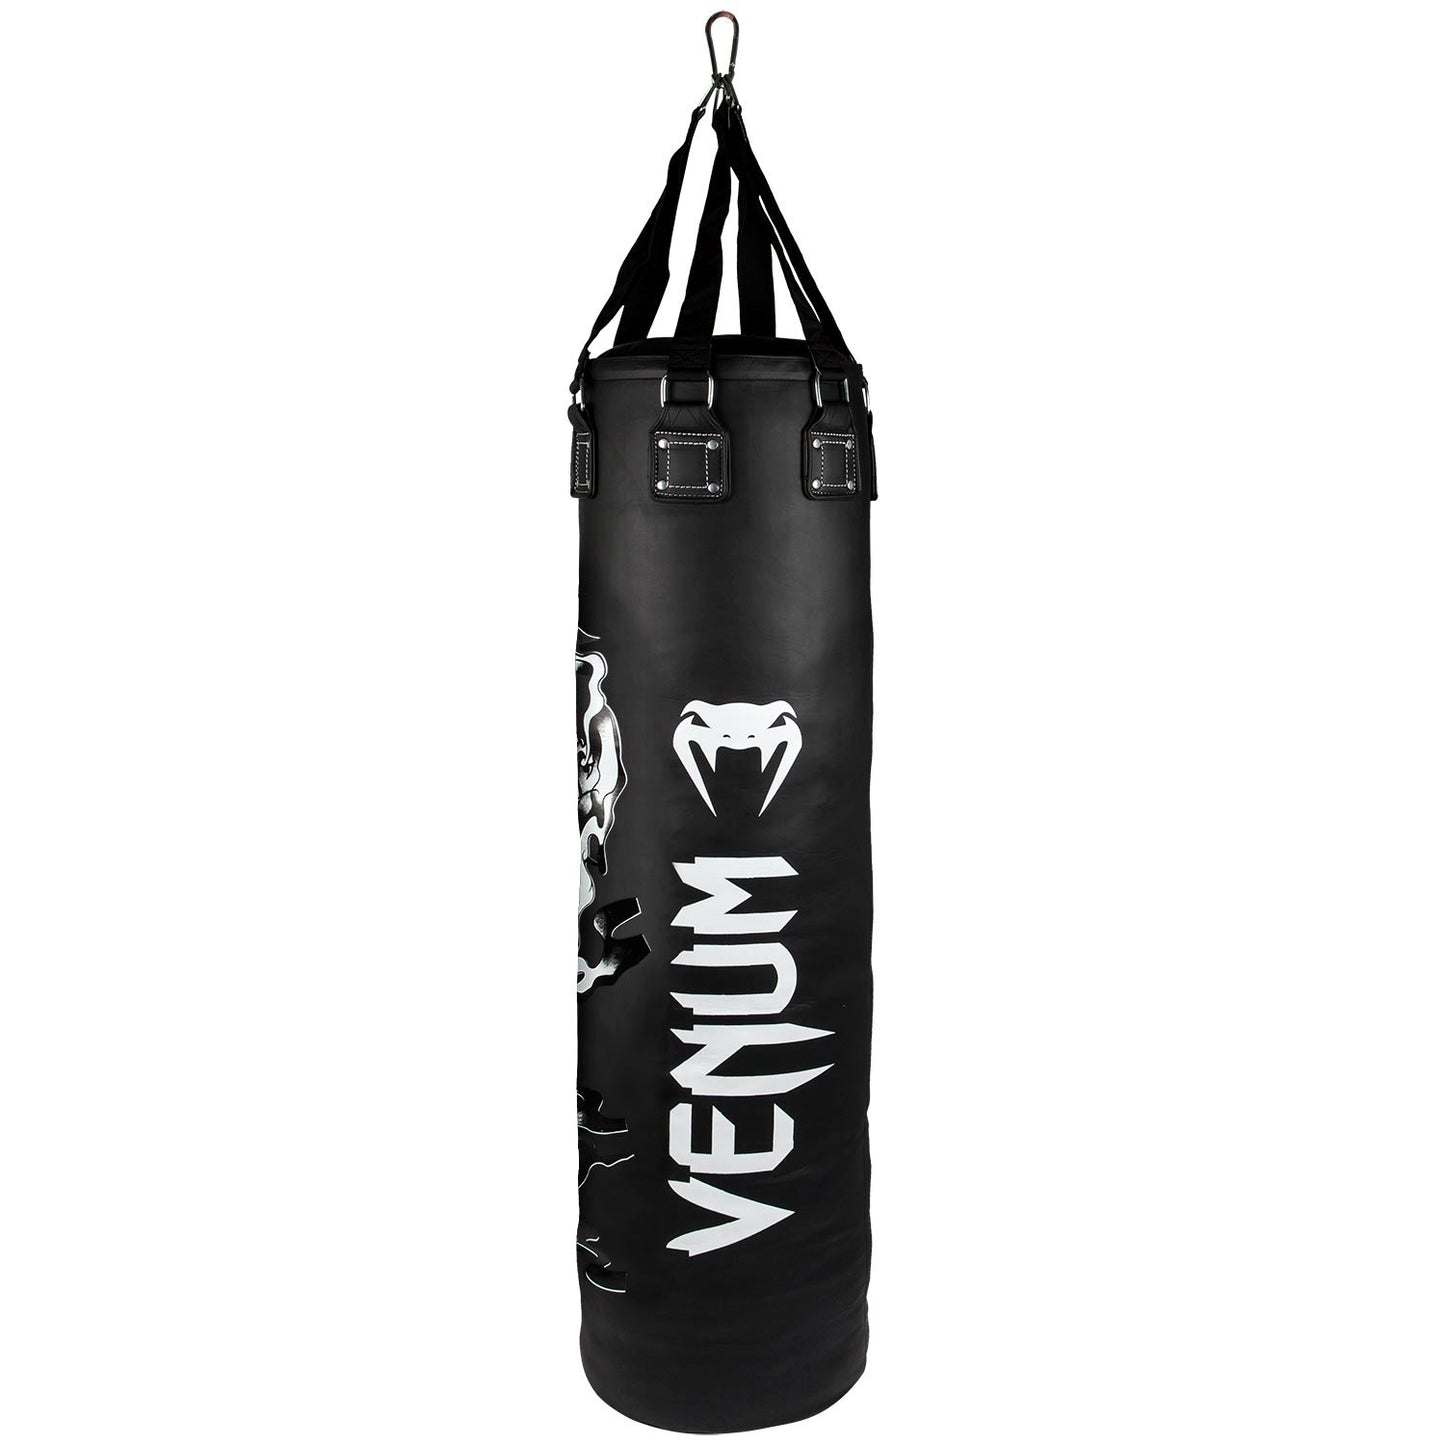 Venum Dragon's Flight Heavy Bag - Nero/Bianco - Non riempito - 130cm